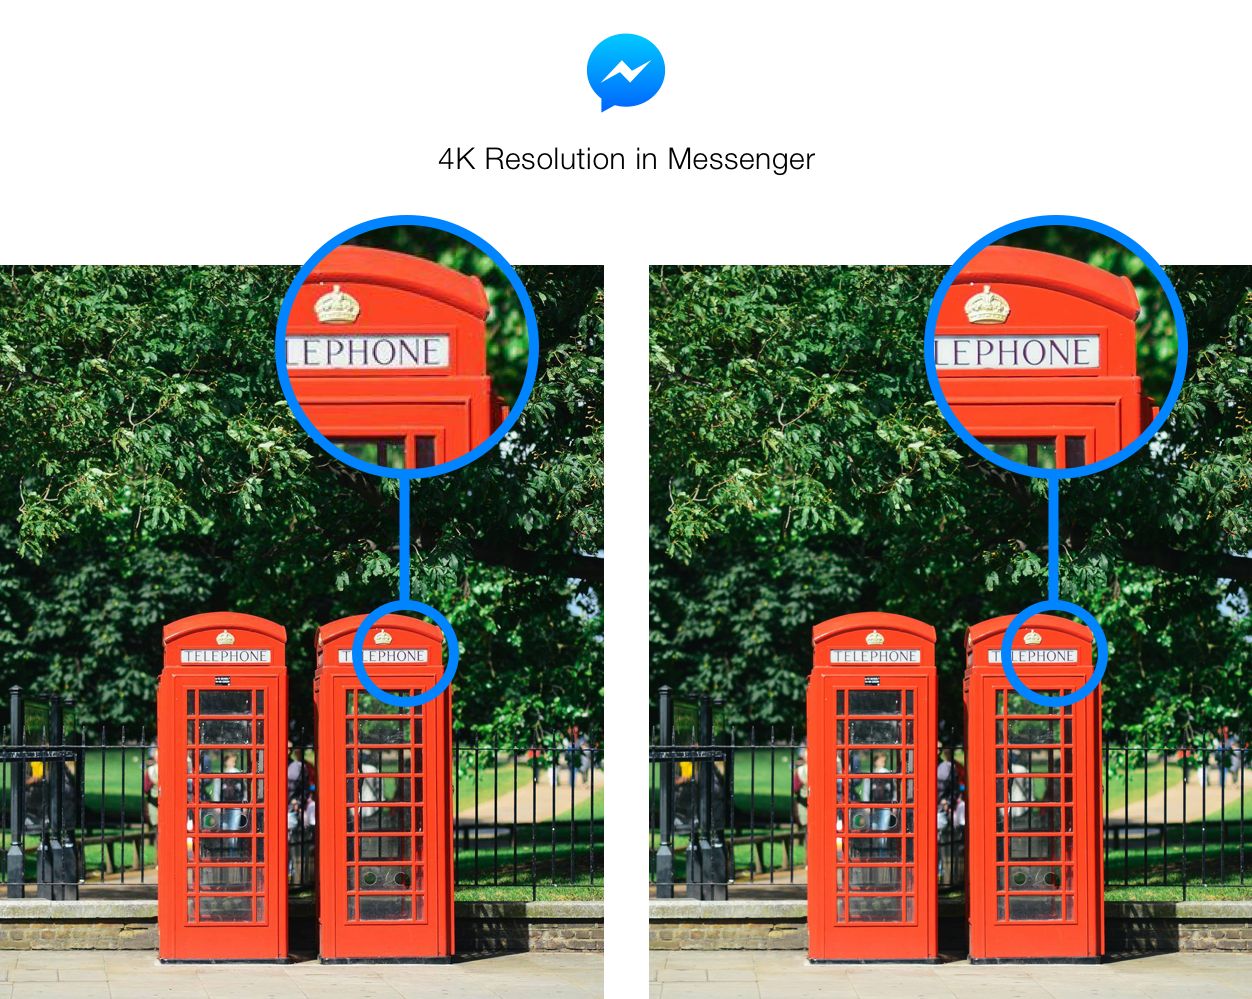 W końcu zobaczymy lepszą jakość zdjęć na Facebook Messengerze - nawet do 4K!